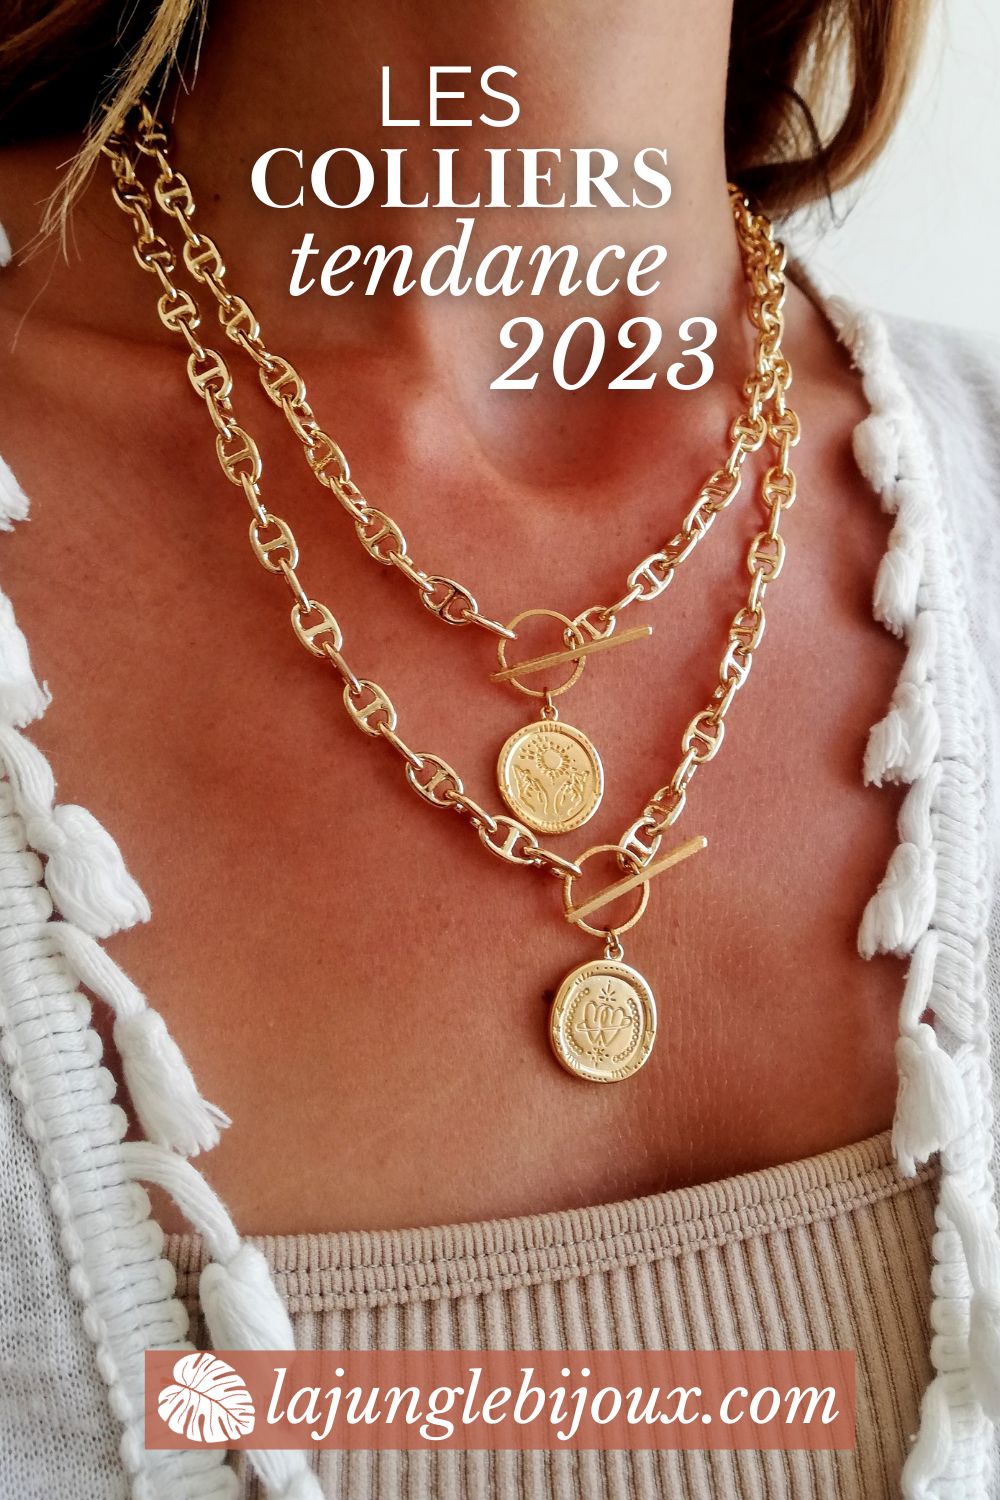 les colliers tendance hiver 2023 bijoux or femme